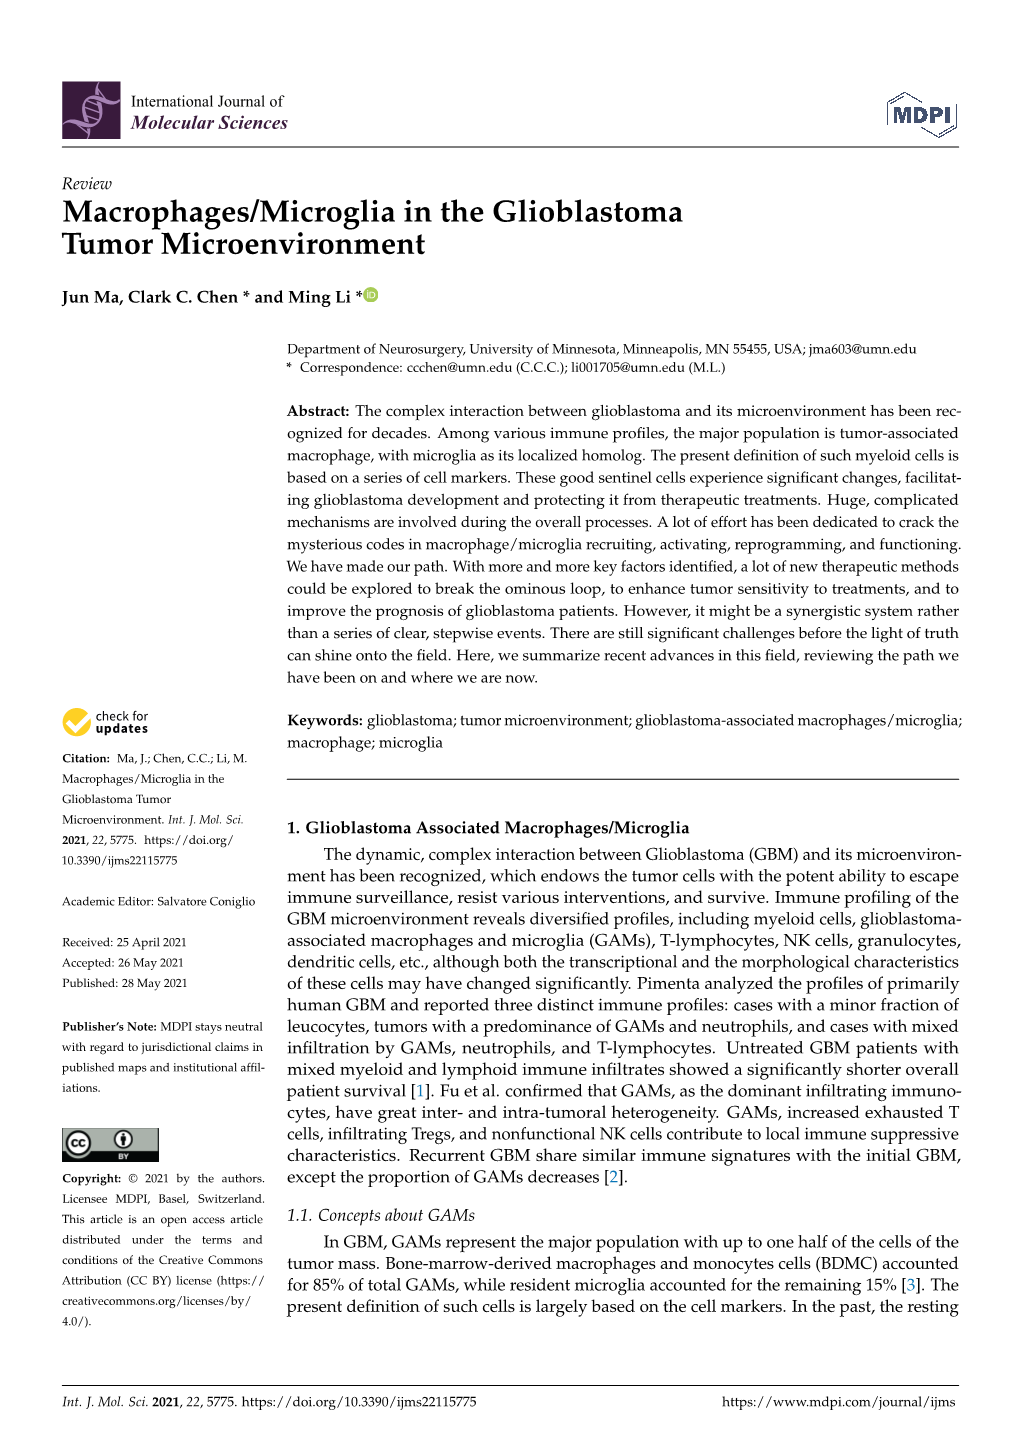 Macrophages/Microglia in the Glioblastoma Tumor Microenvironment